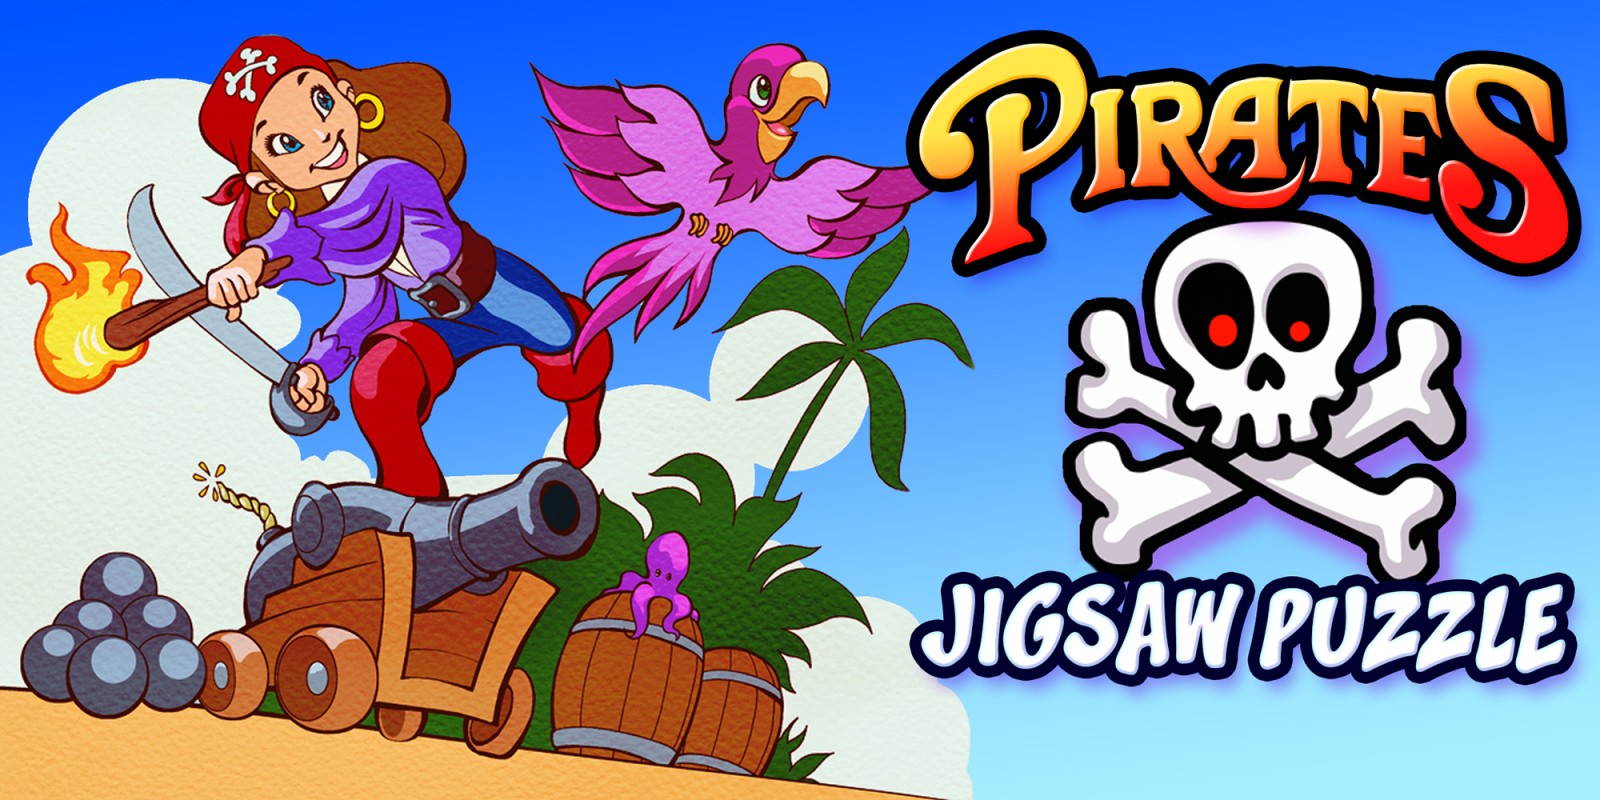 Pirates Jigsaw Puzzle - пираты головоломки образование приключения обучение дети пазлы игры для детей и малышей